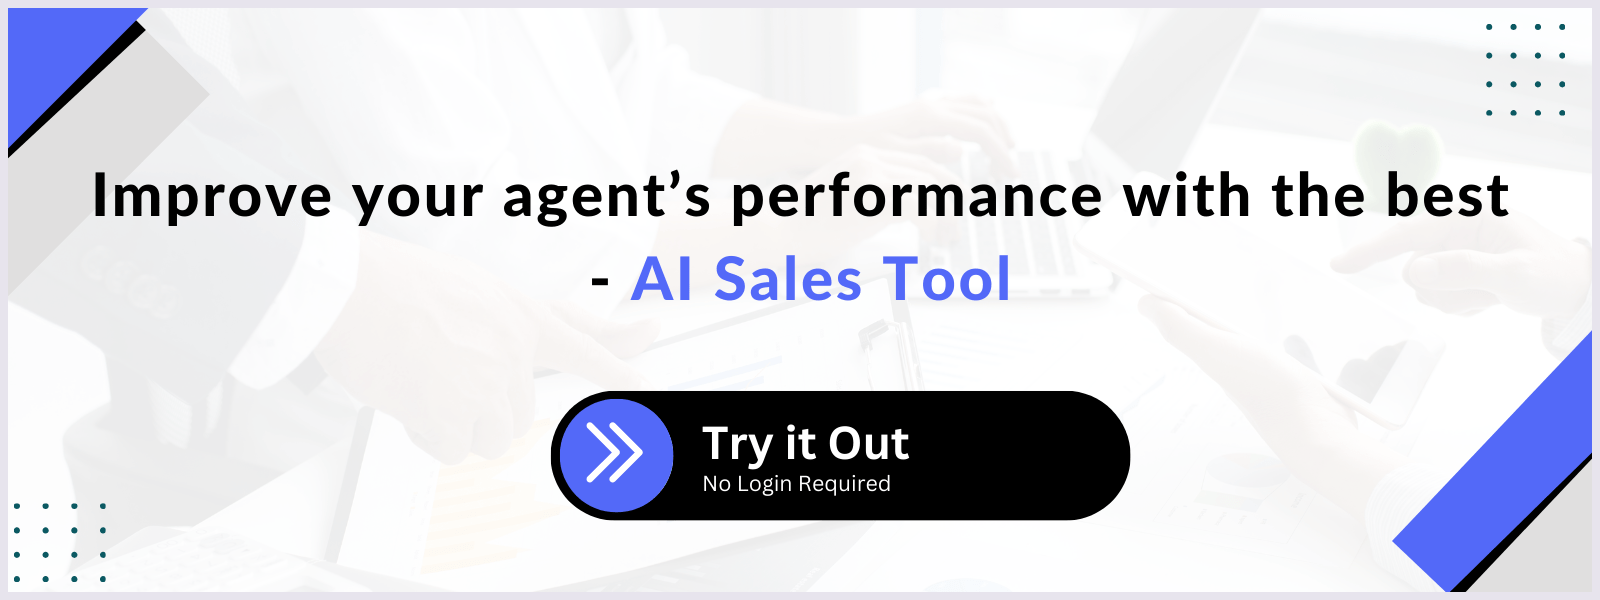 AI Sales Tool